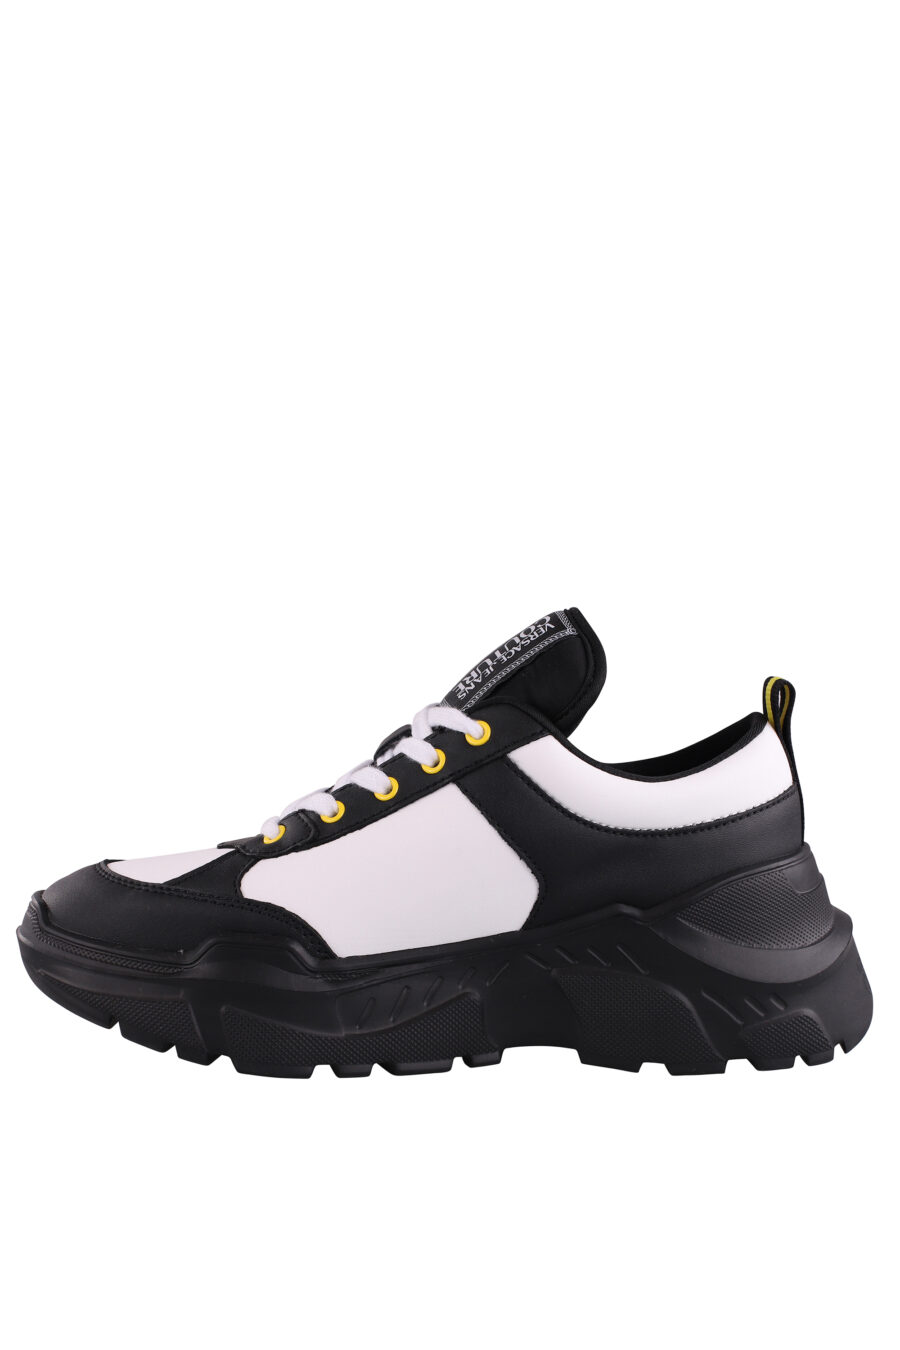 Zapatillas bicolor negras y blancas con logo y detalle amarillo - IMG 9071